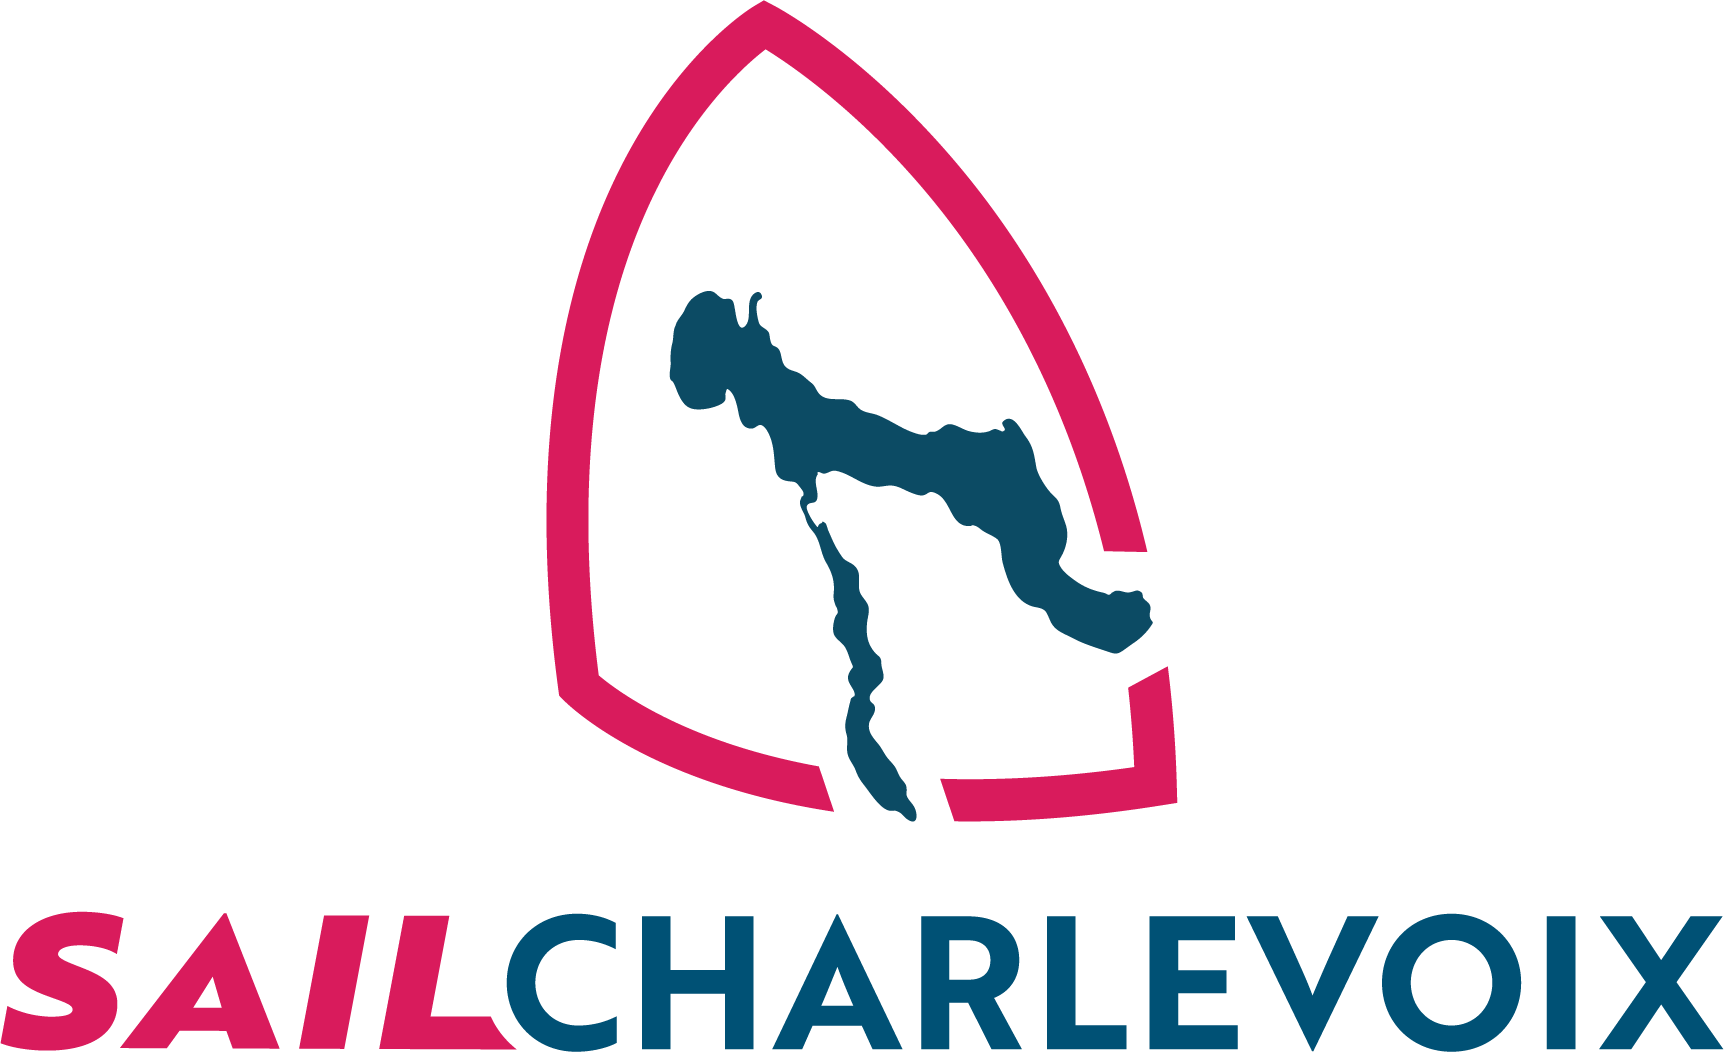 Sail Charlevoix logo